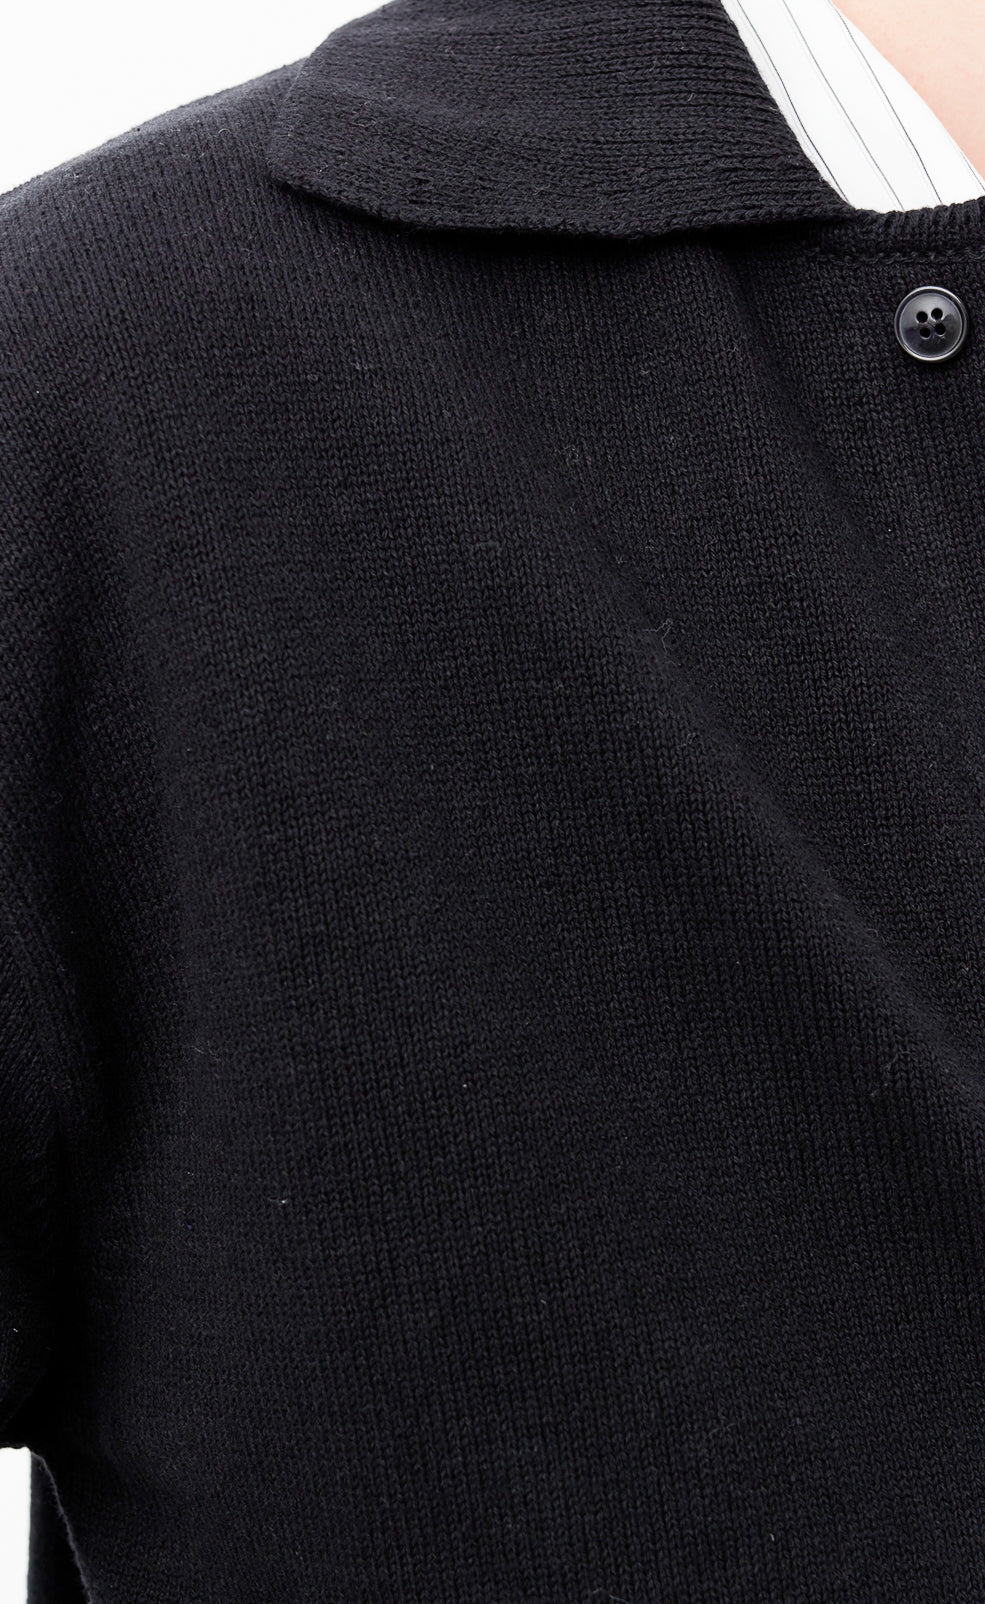 Formal Polo Shirt - Black